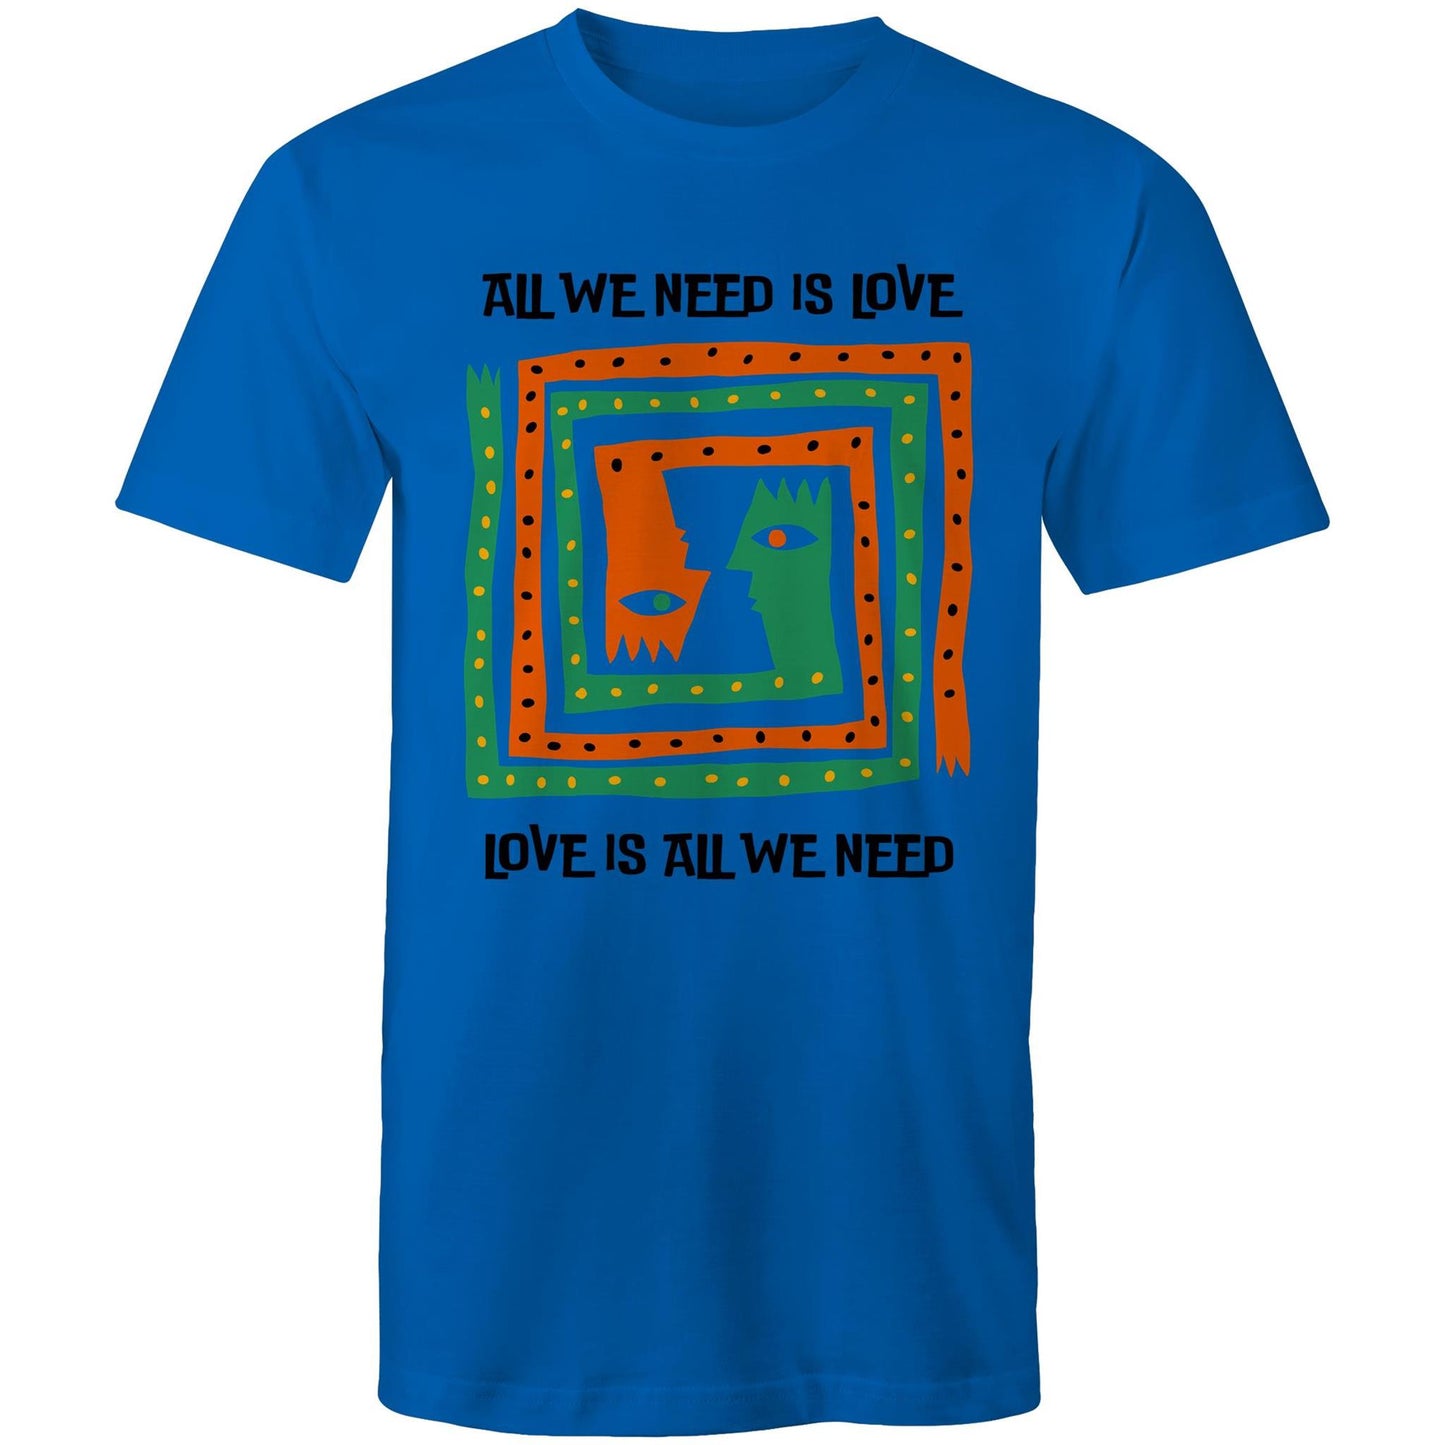 All We Need Is Love - Mens T-Shirt Bright Royal Mens T-shirt